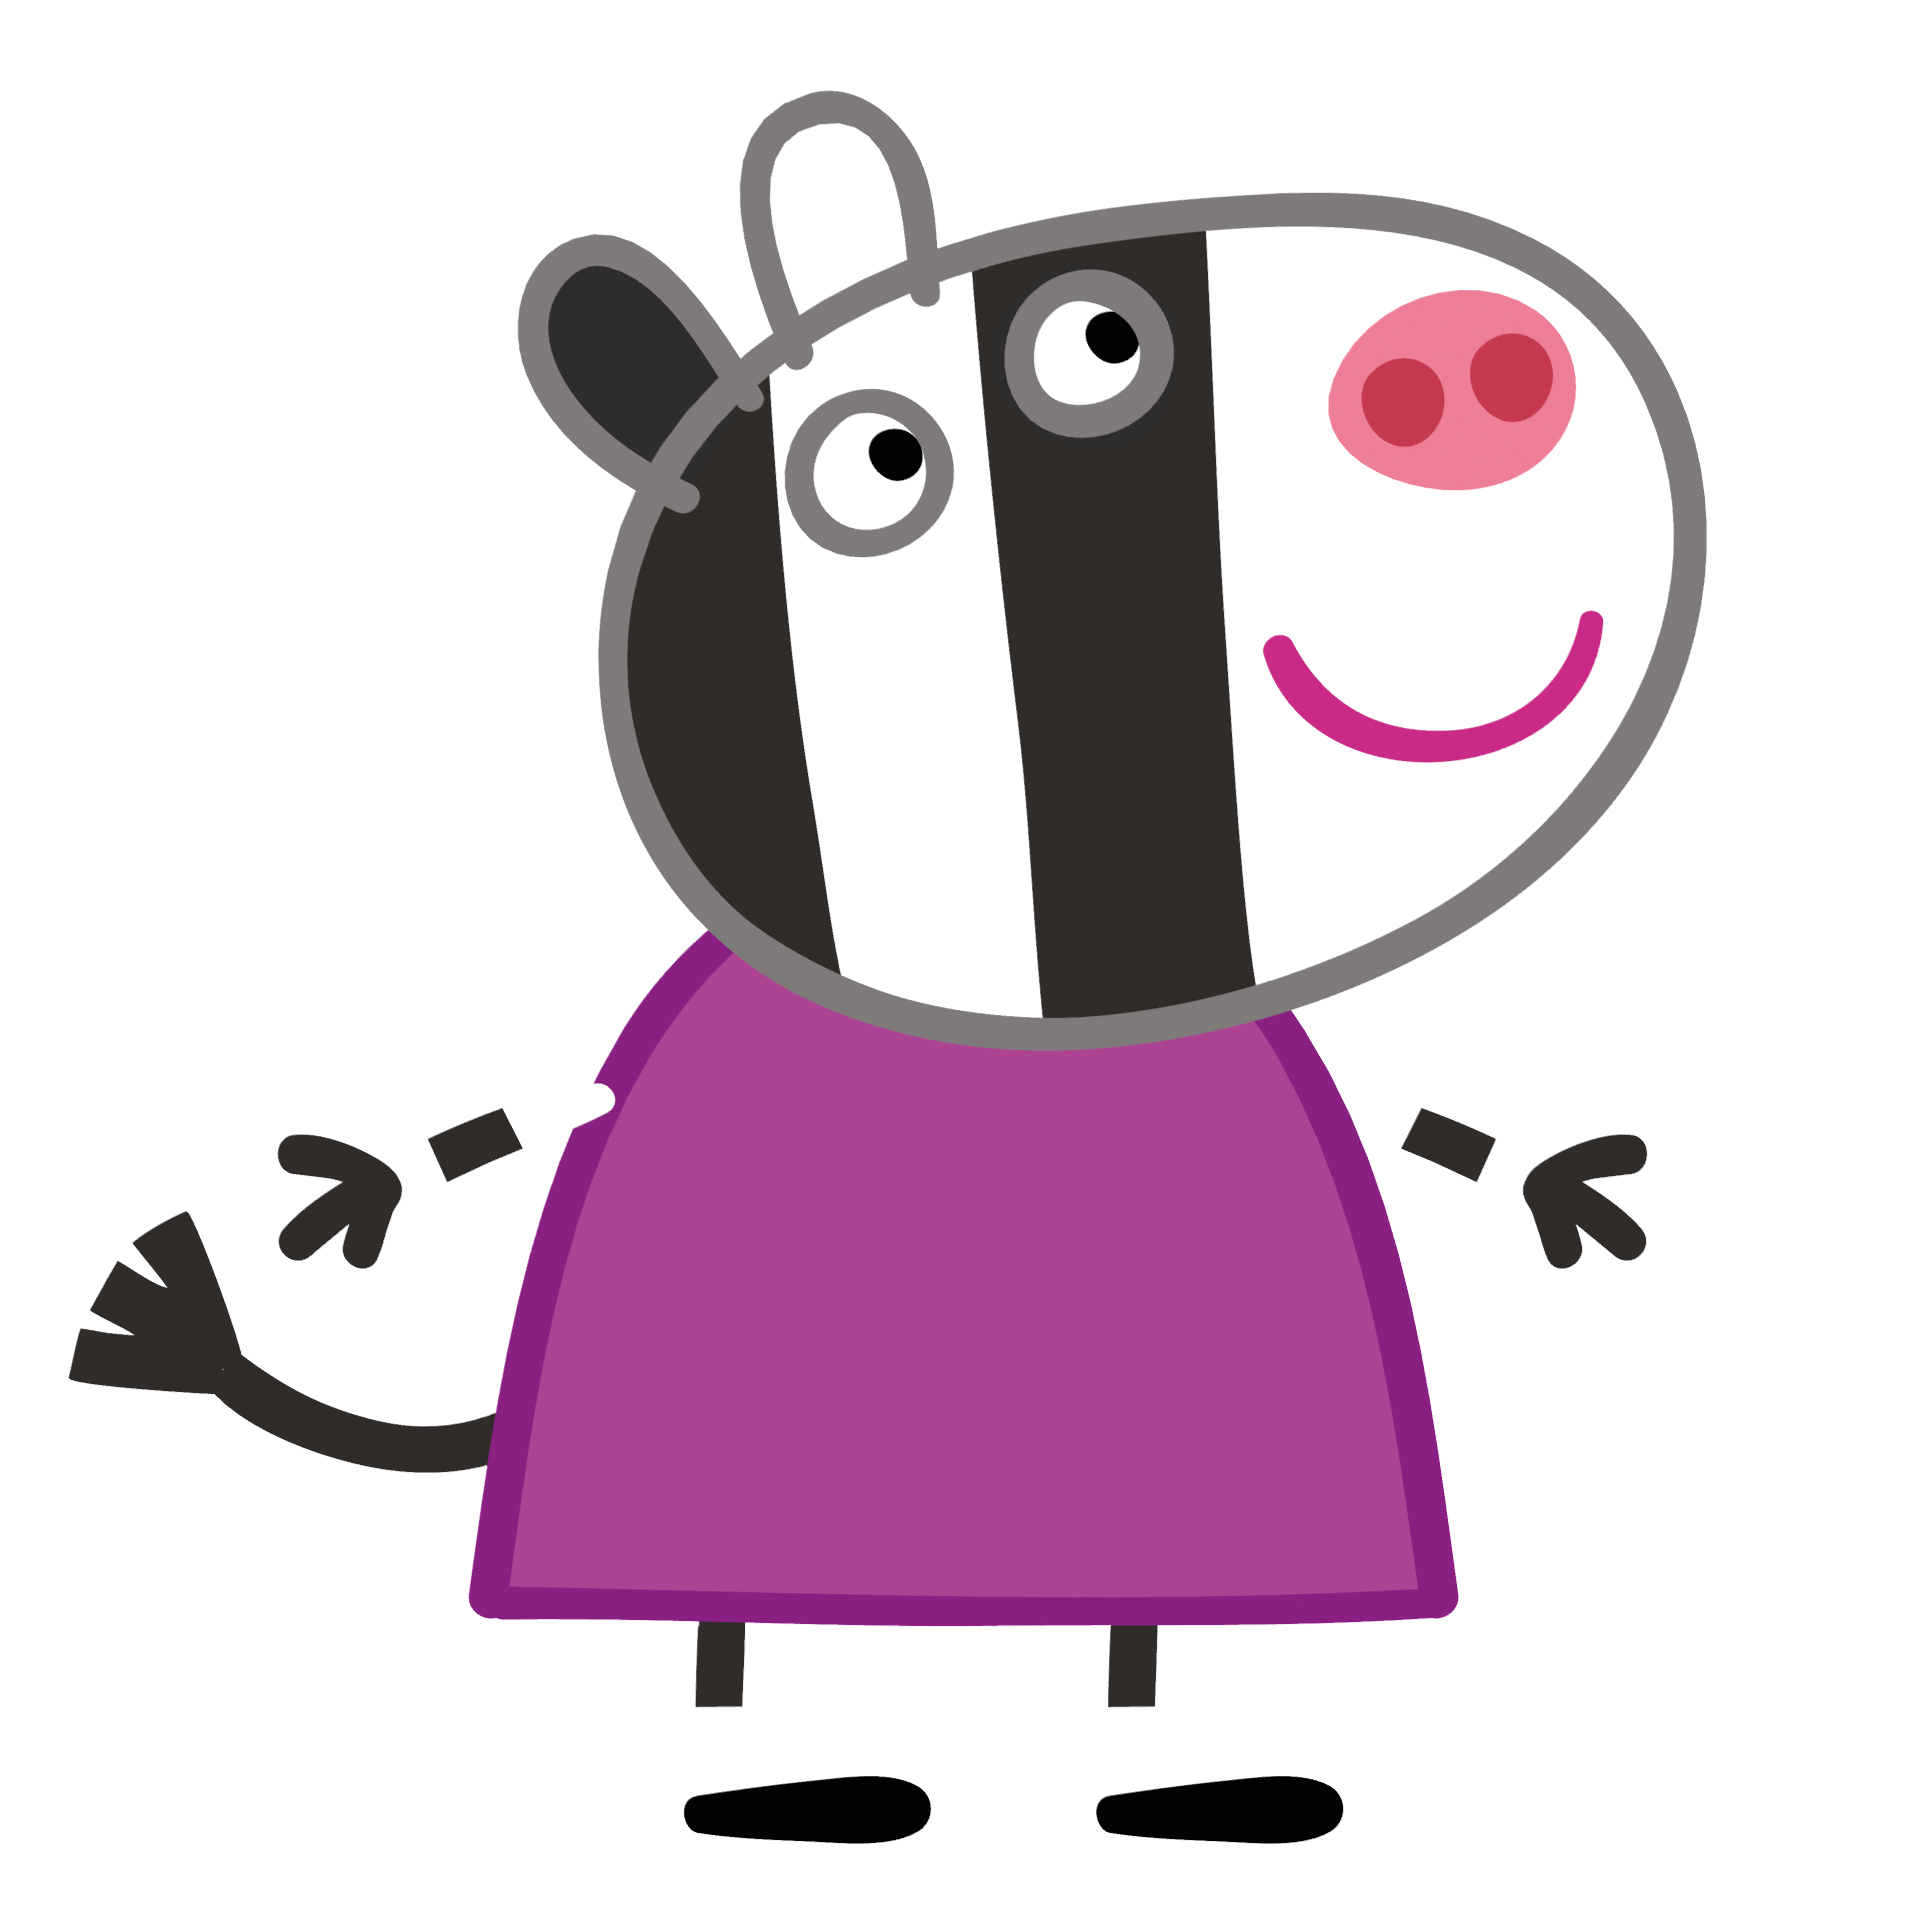 Zoe Zebra - Peppa Pig